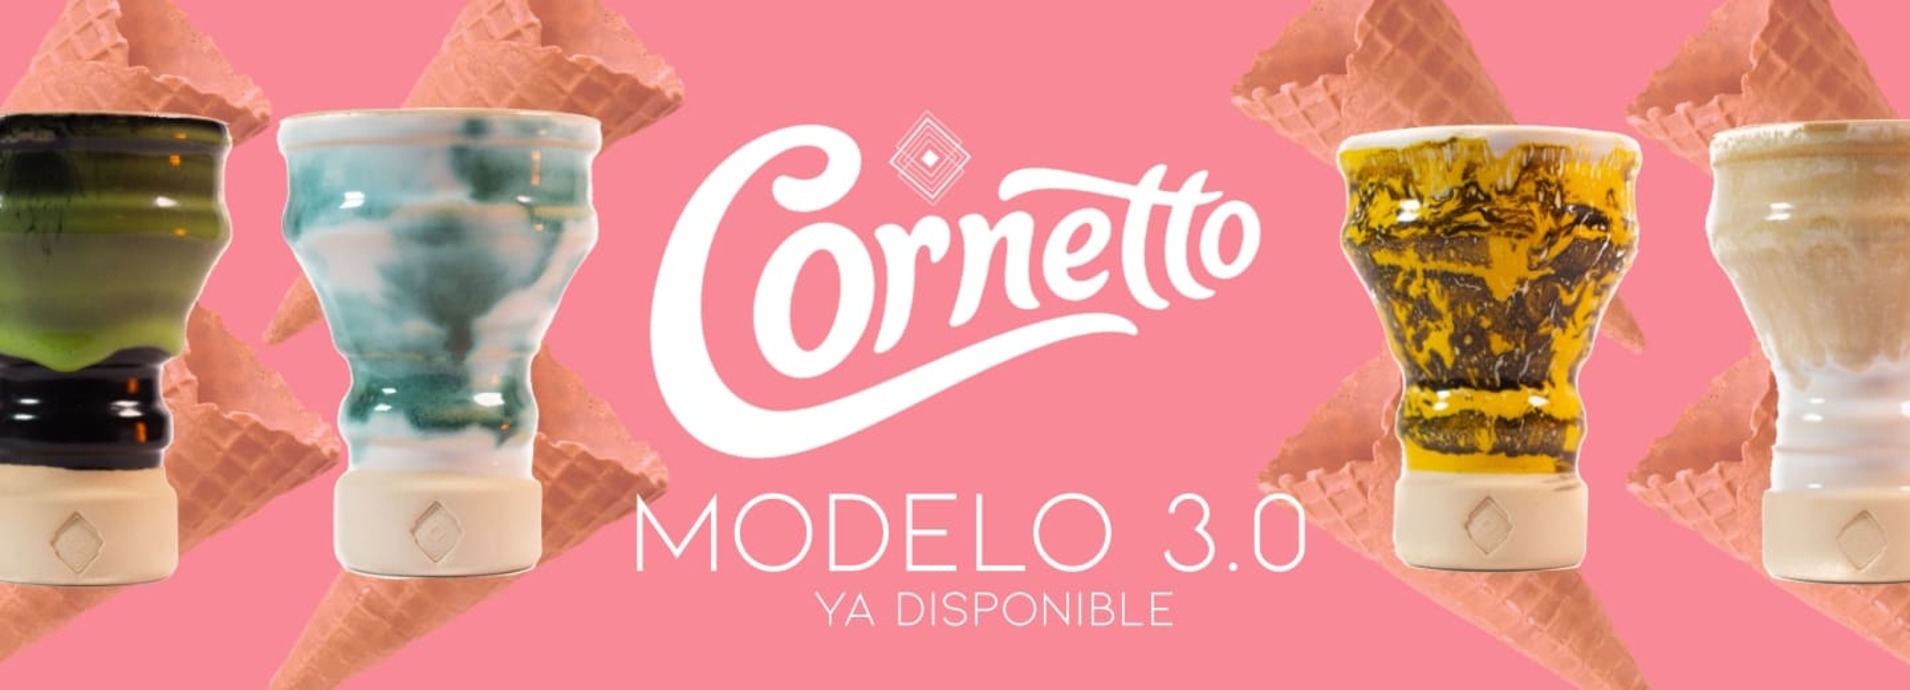 Cornetto 3.0 Mobil